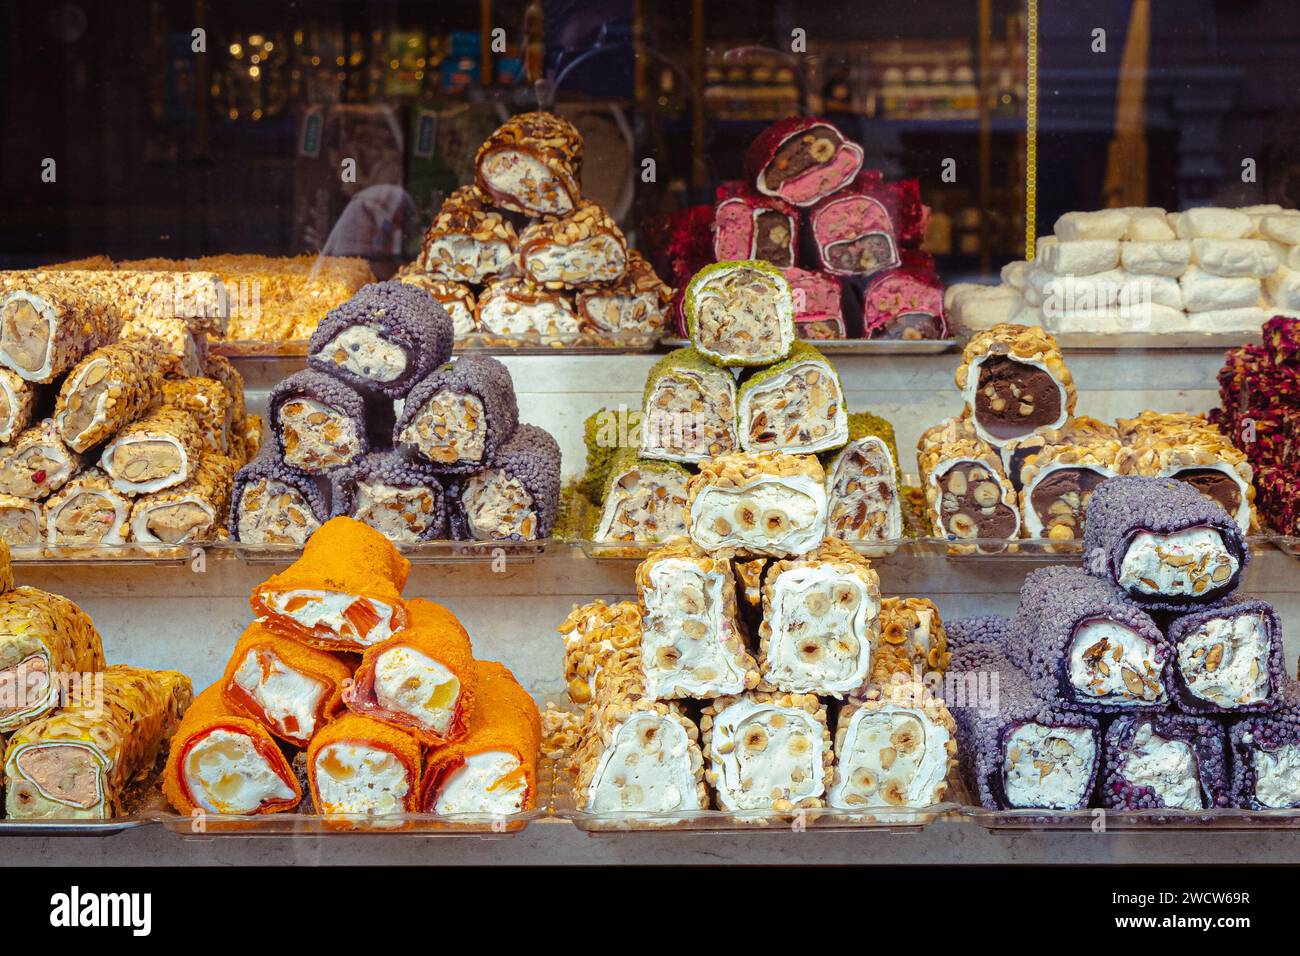 Délices turcs (lokum), bonbons turcs traditionnels exposés dans une boutique du Grand Bazar à Istanbul, Turquie Banque D'Images